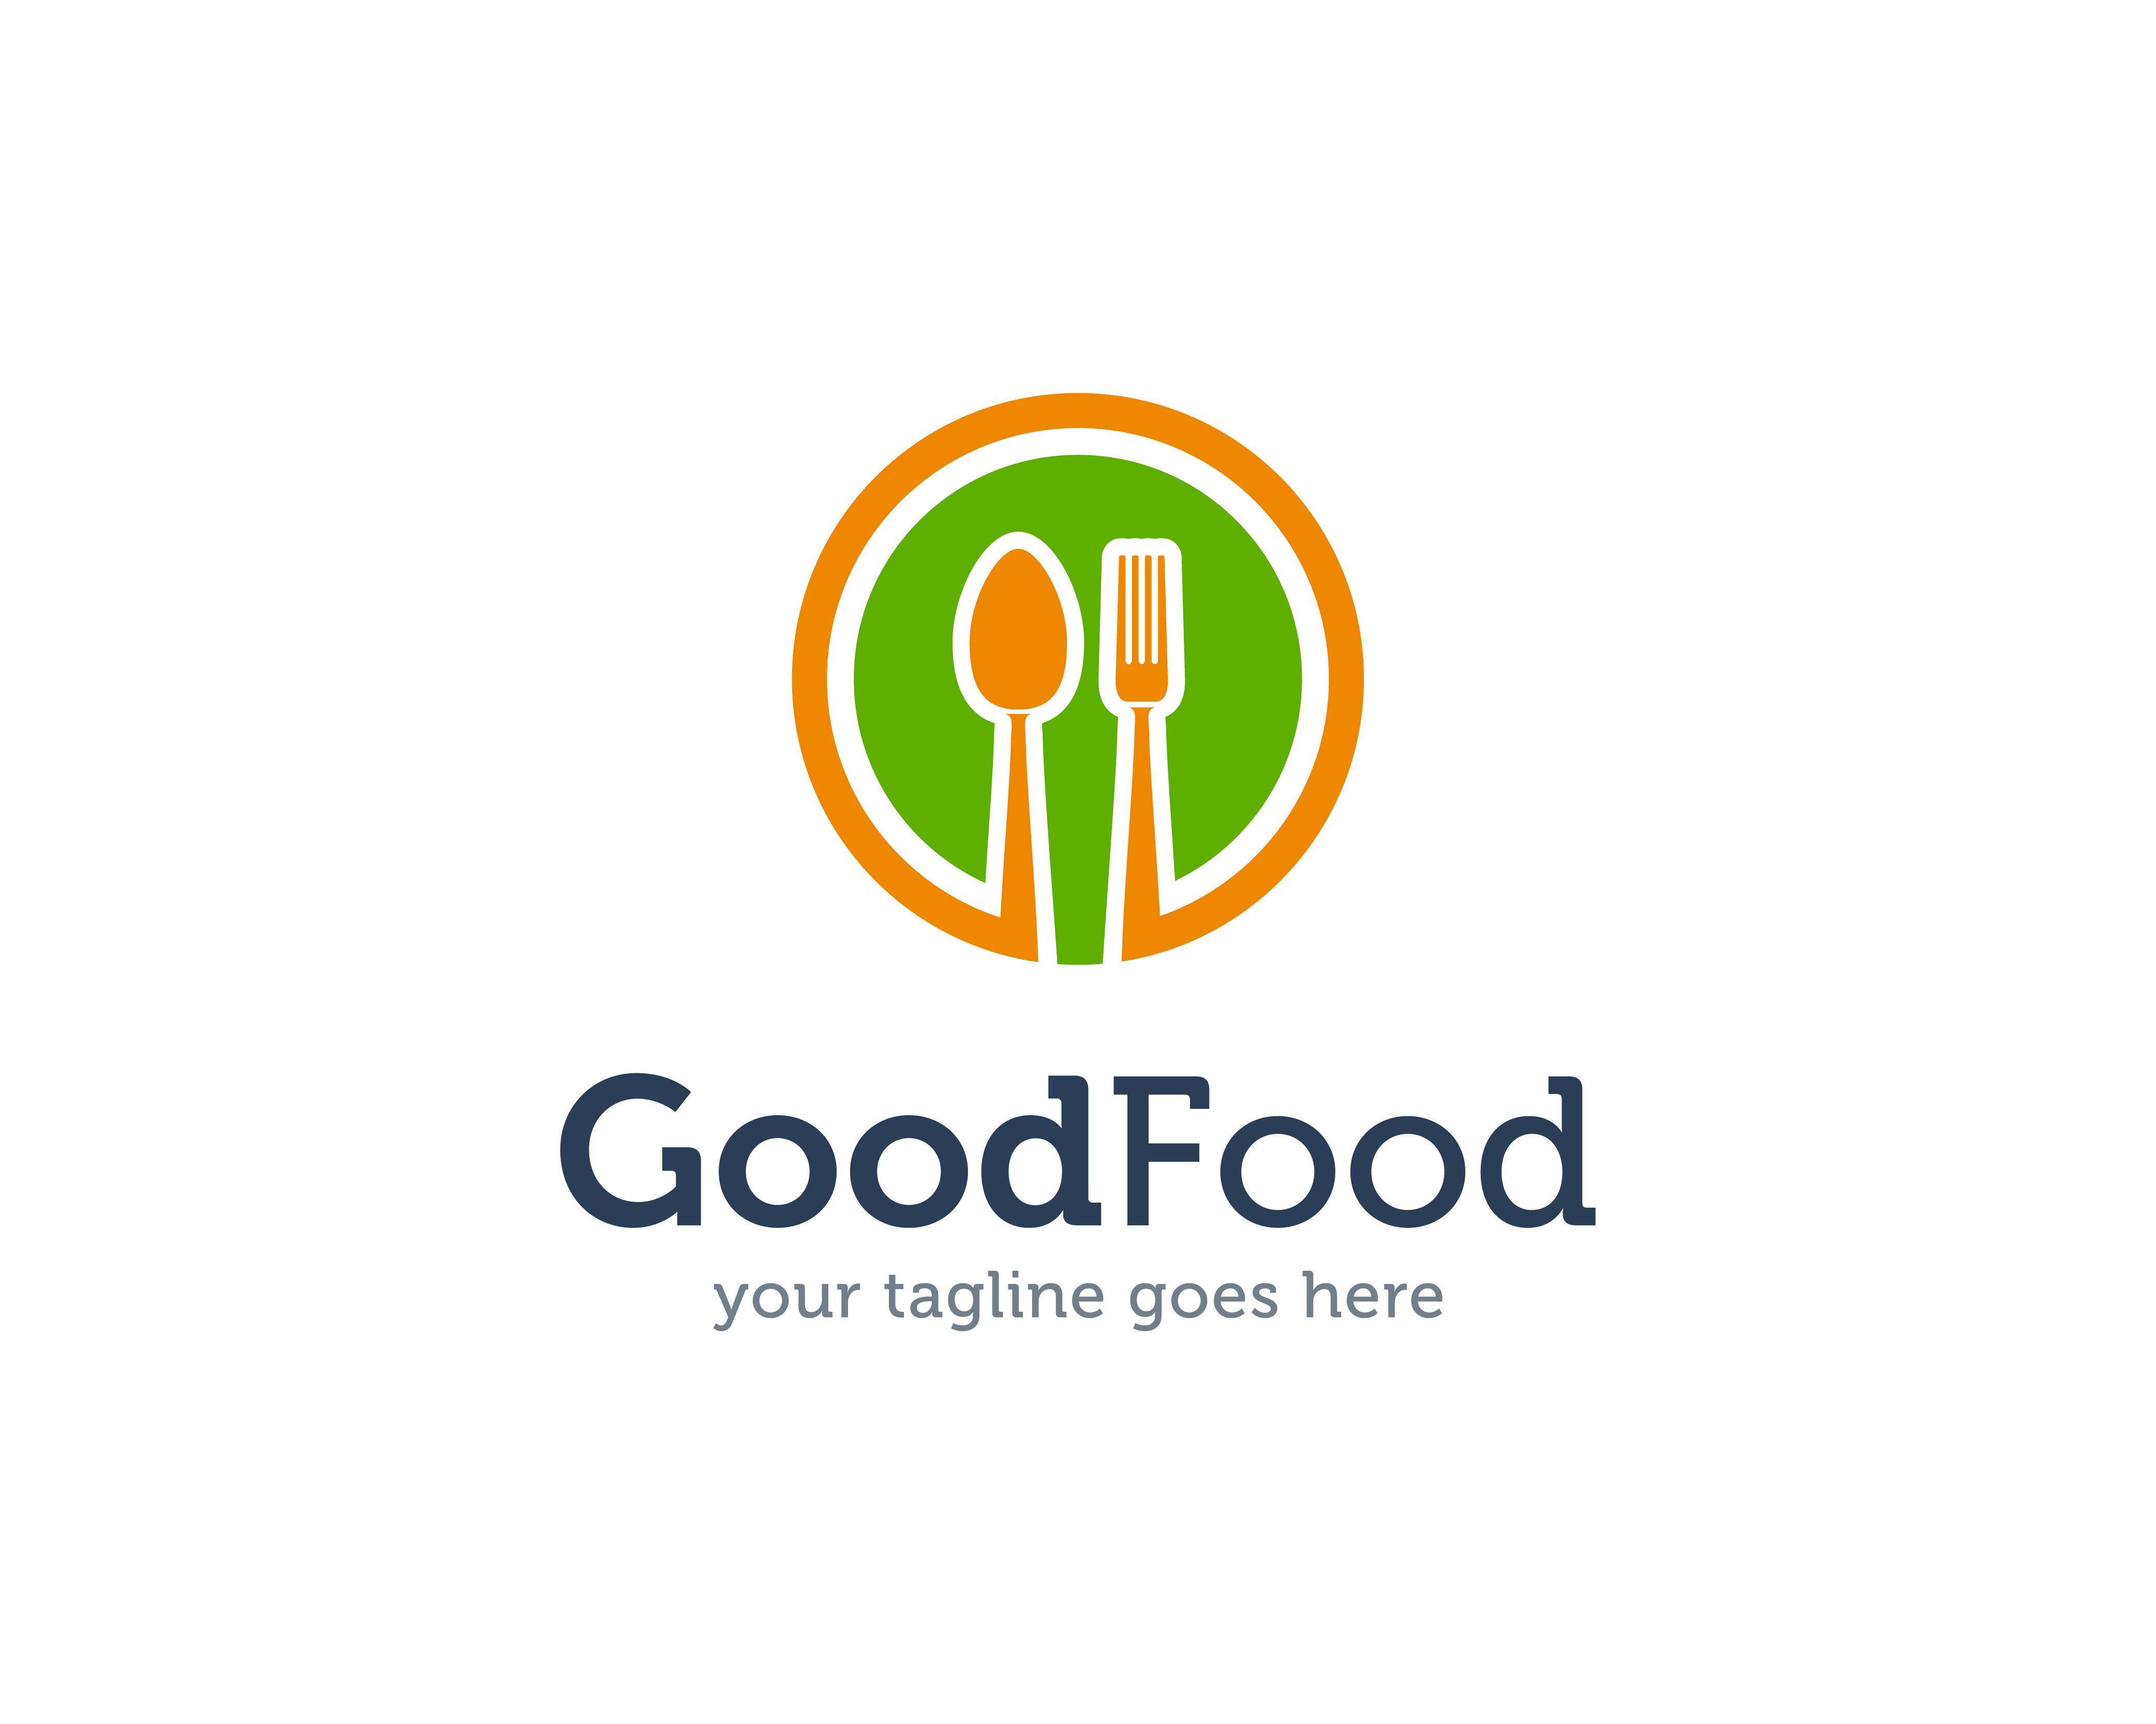 食物 logo 免費下載 | 天天瘋後製